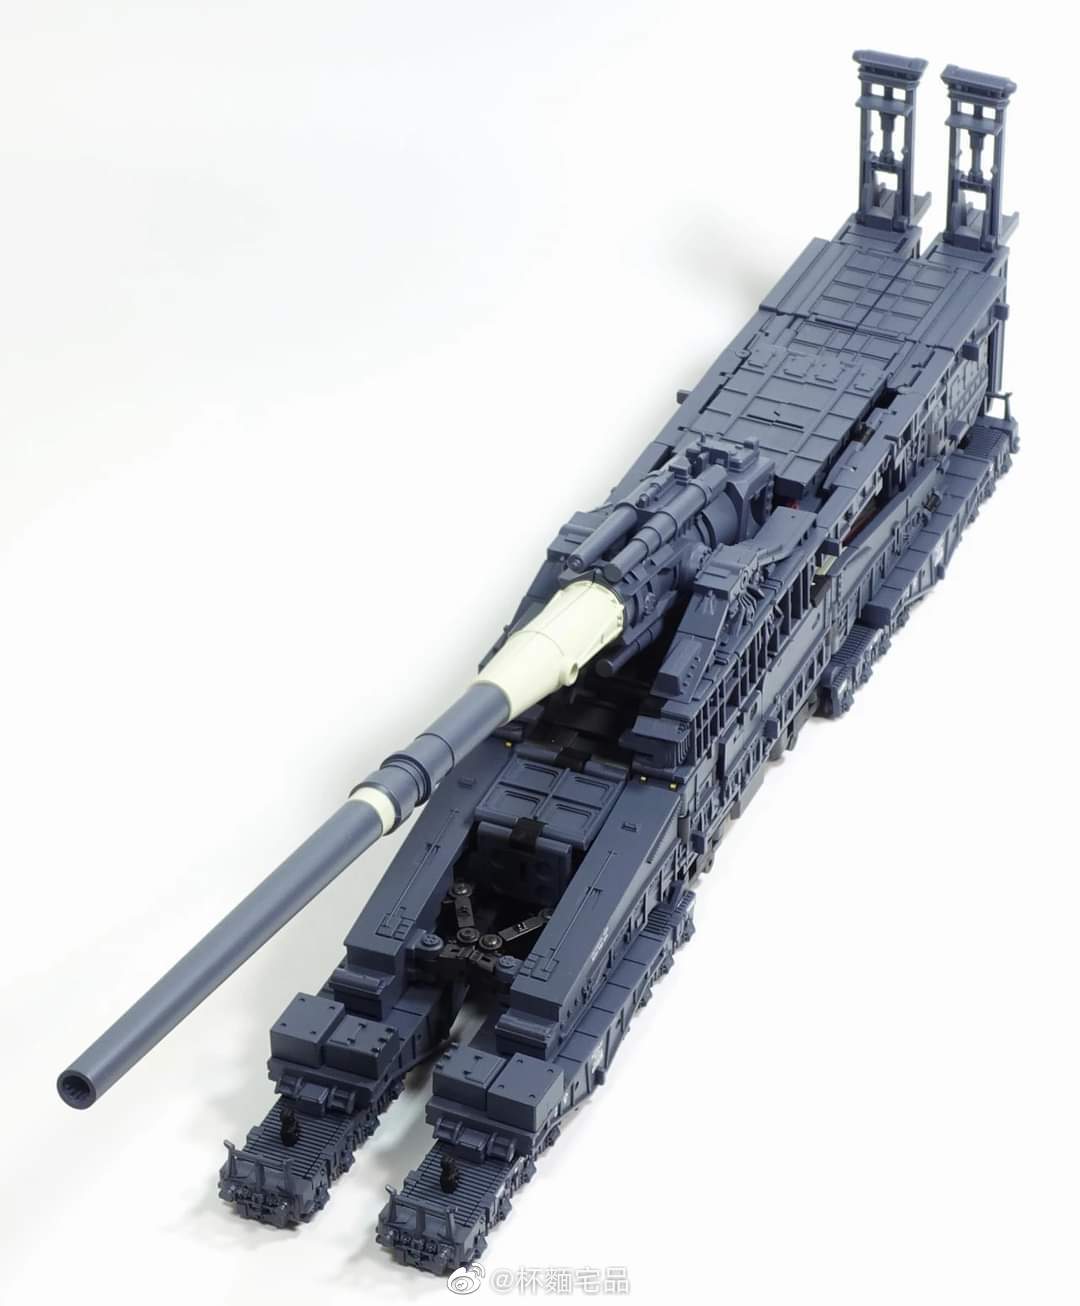 Working LEGO Schwerer Gustav Rail Super Gun 